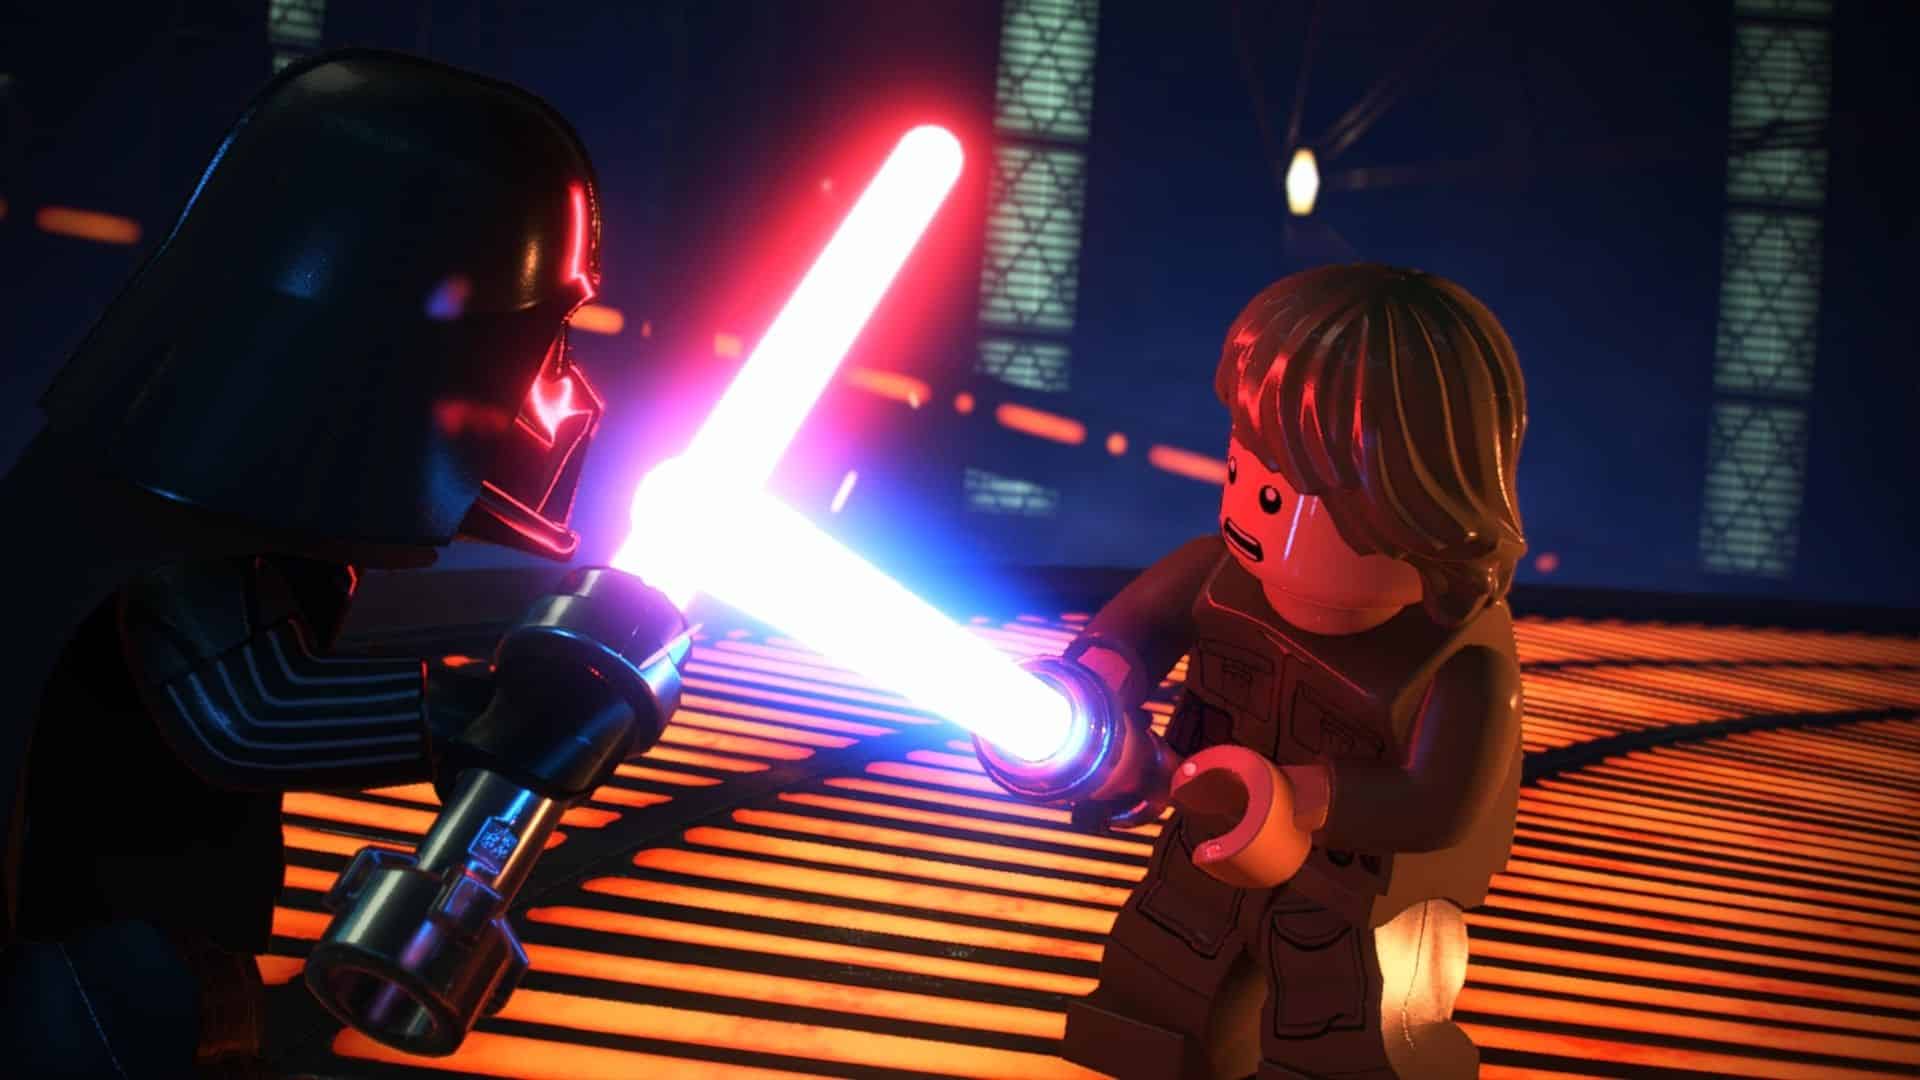 darth vader and luke skywalker lightsaber battle in lego star wars